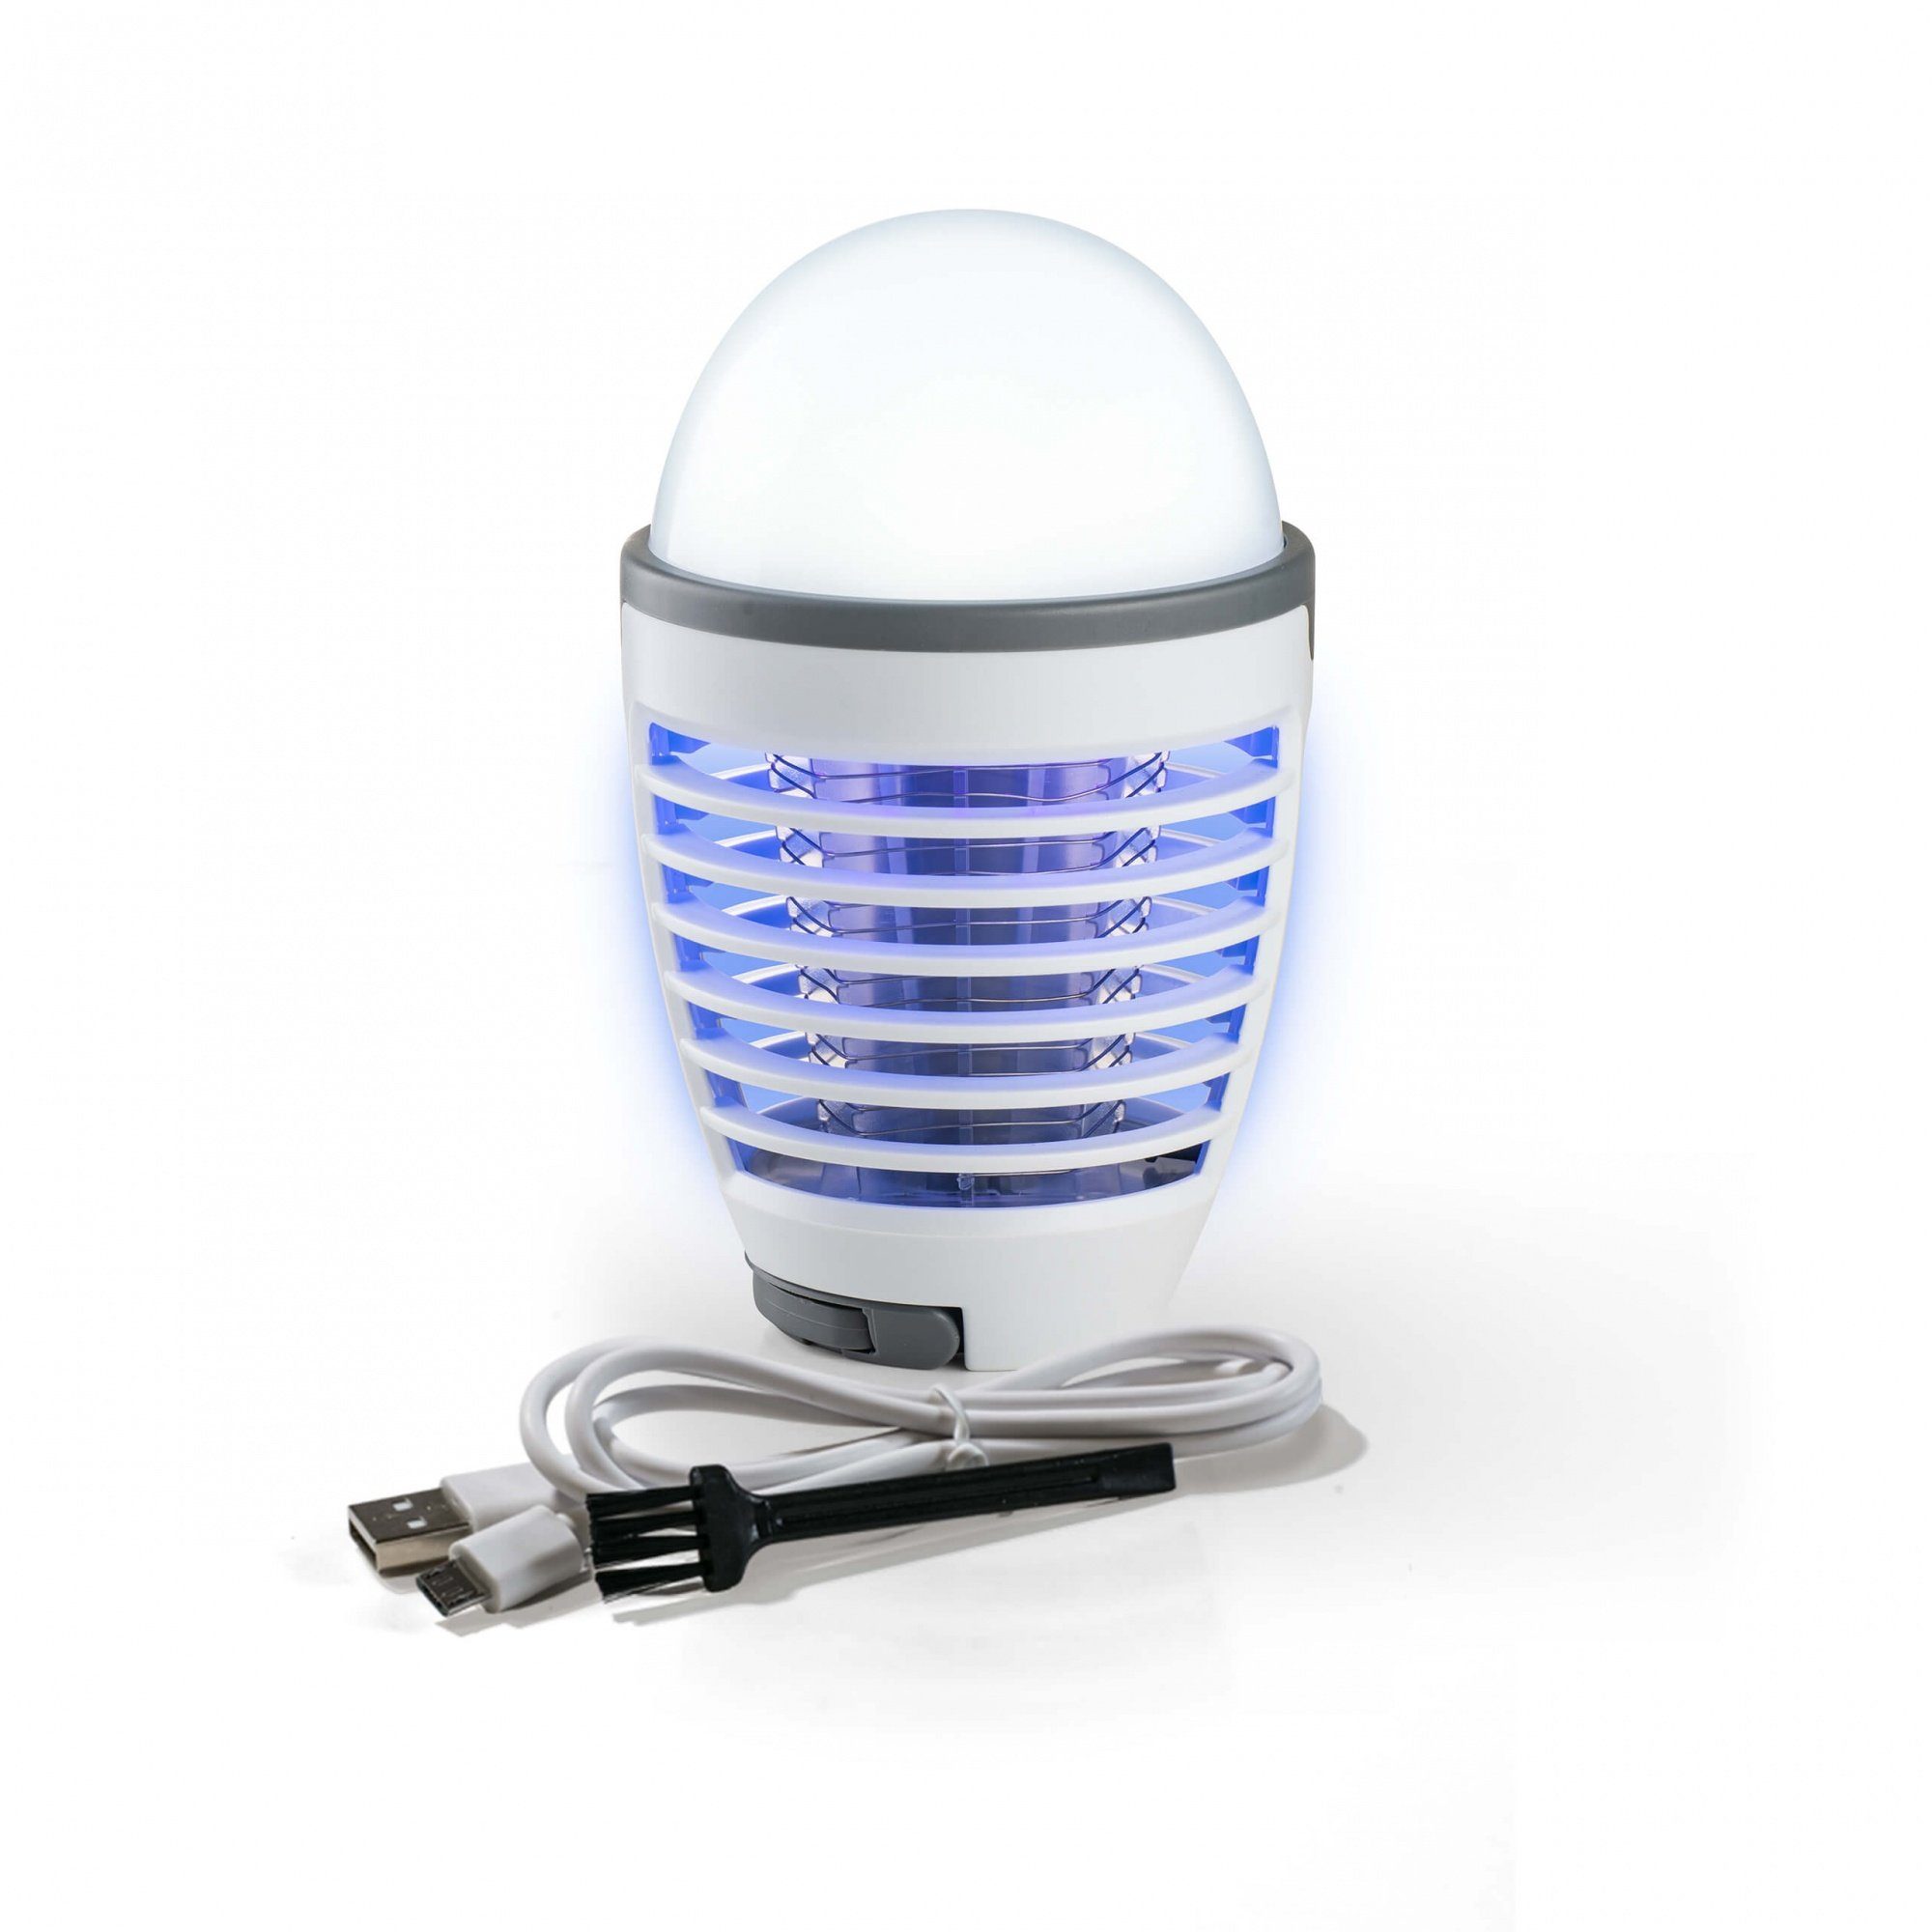 Genius Moskitonetz Moskito Killer Insektenlampe 3tlg. – kabellose UV-Licht Mückenfall (3 tlg., mit Hochspannungsgitter), LED-Licht und Akku - Insektenschutz auch beim Camping | Moskitonetze